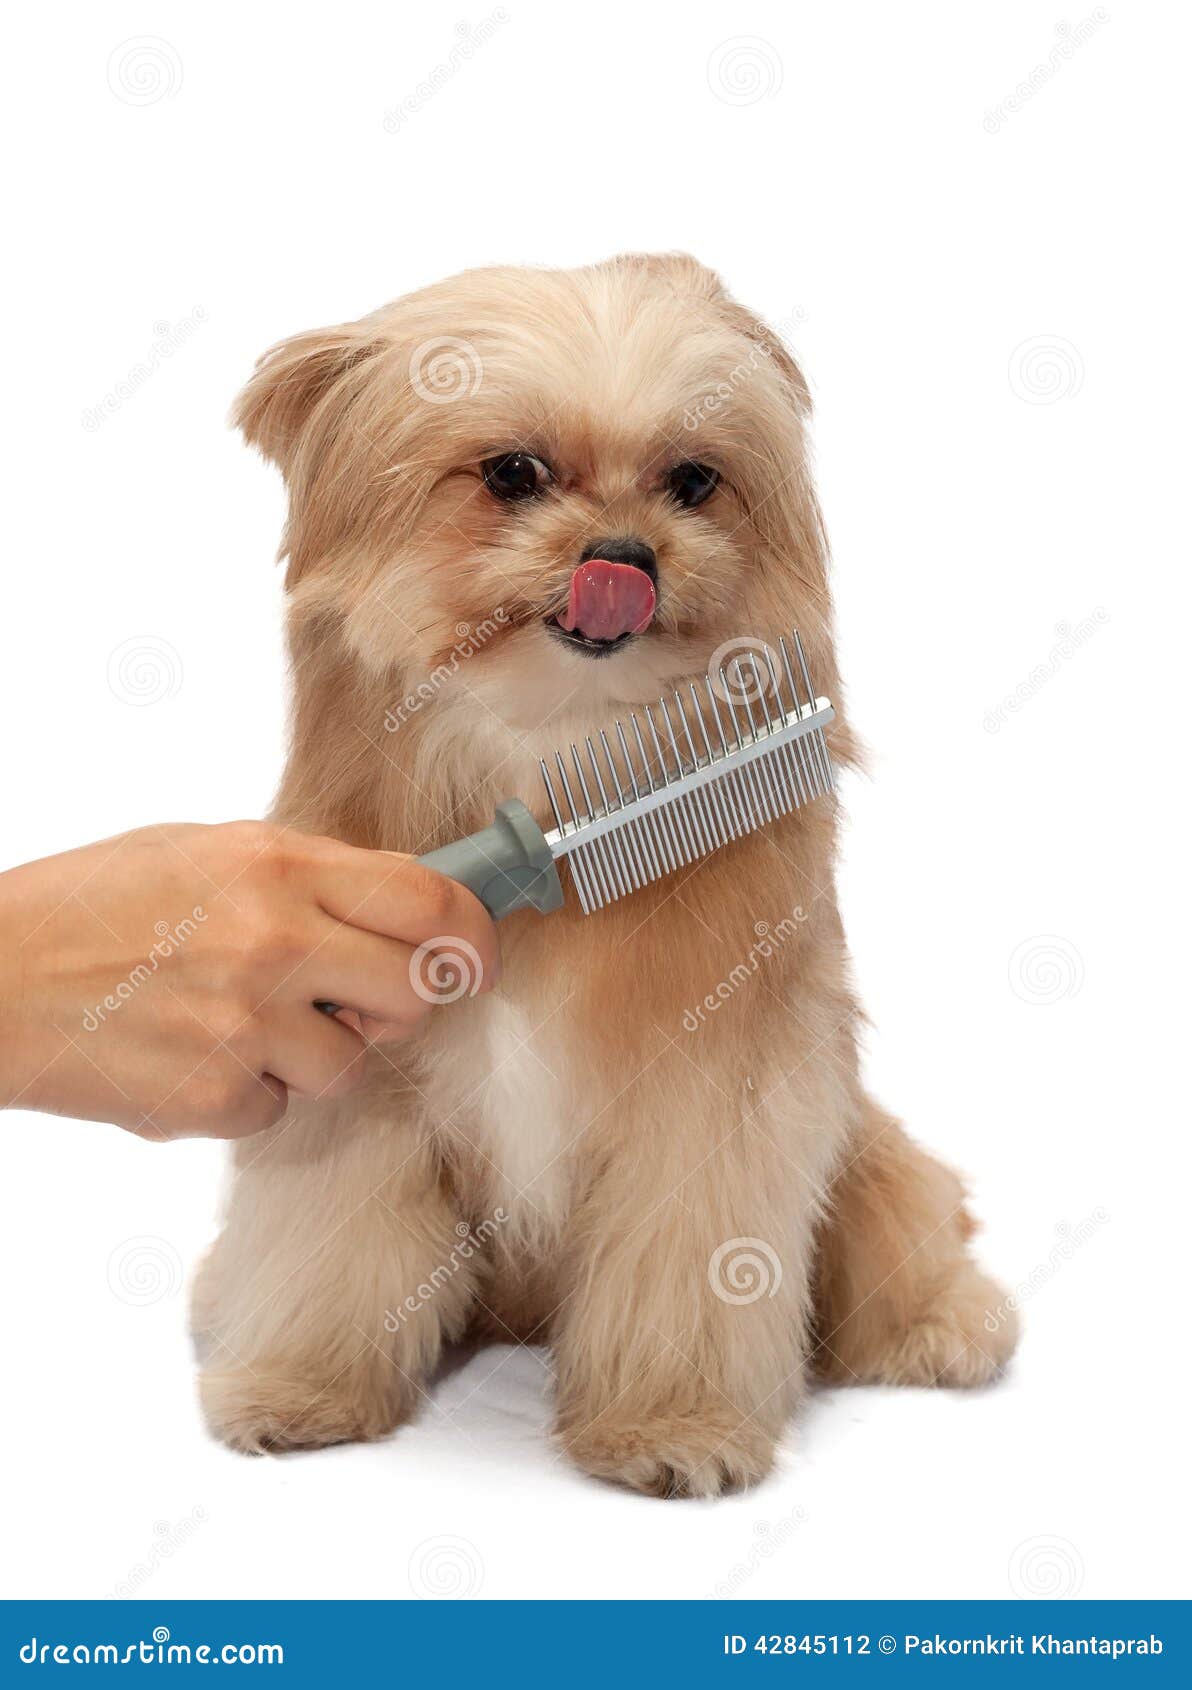 Dog Love Brushing stock photo. Image of breed, freshness - 42845112